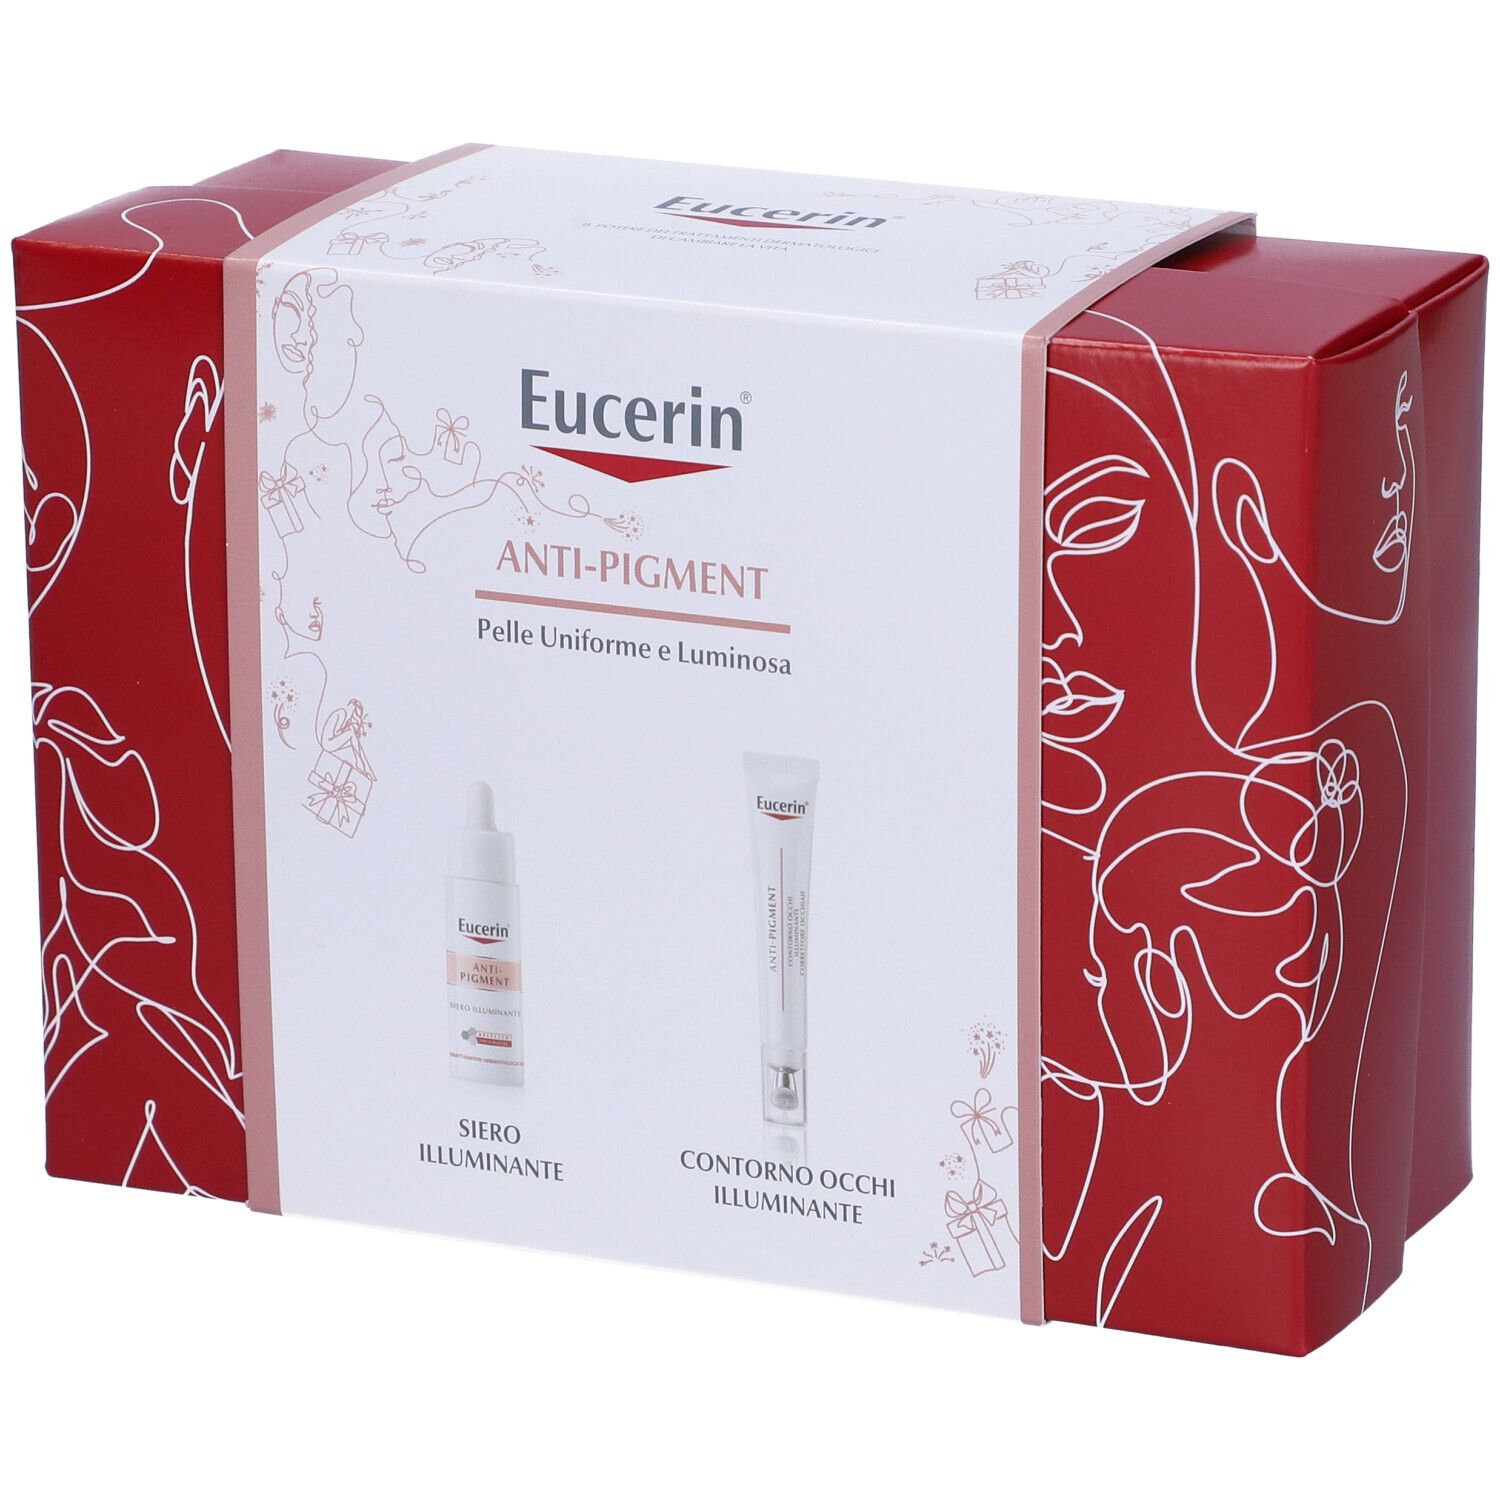 Eucerin Box Anti-Pigment Siero Illuminante + Contorno Occhi Illuminante